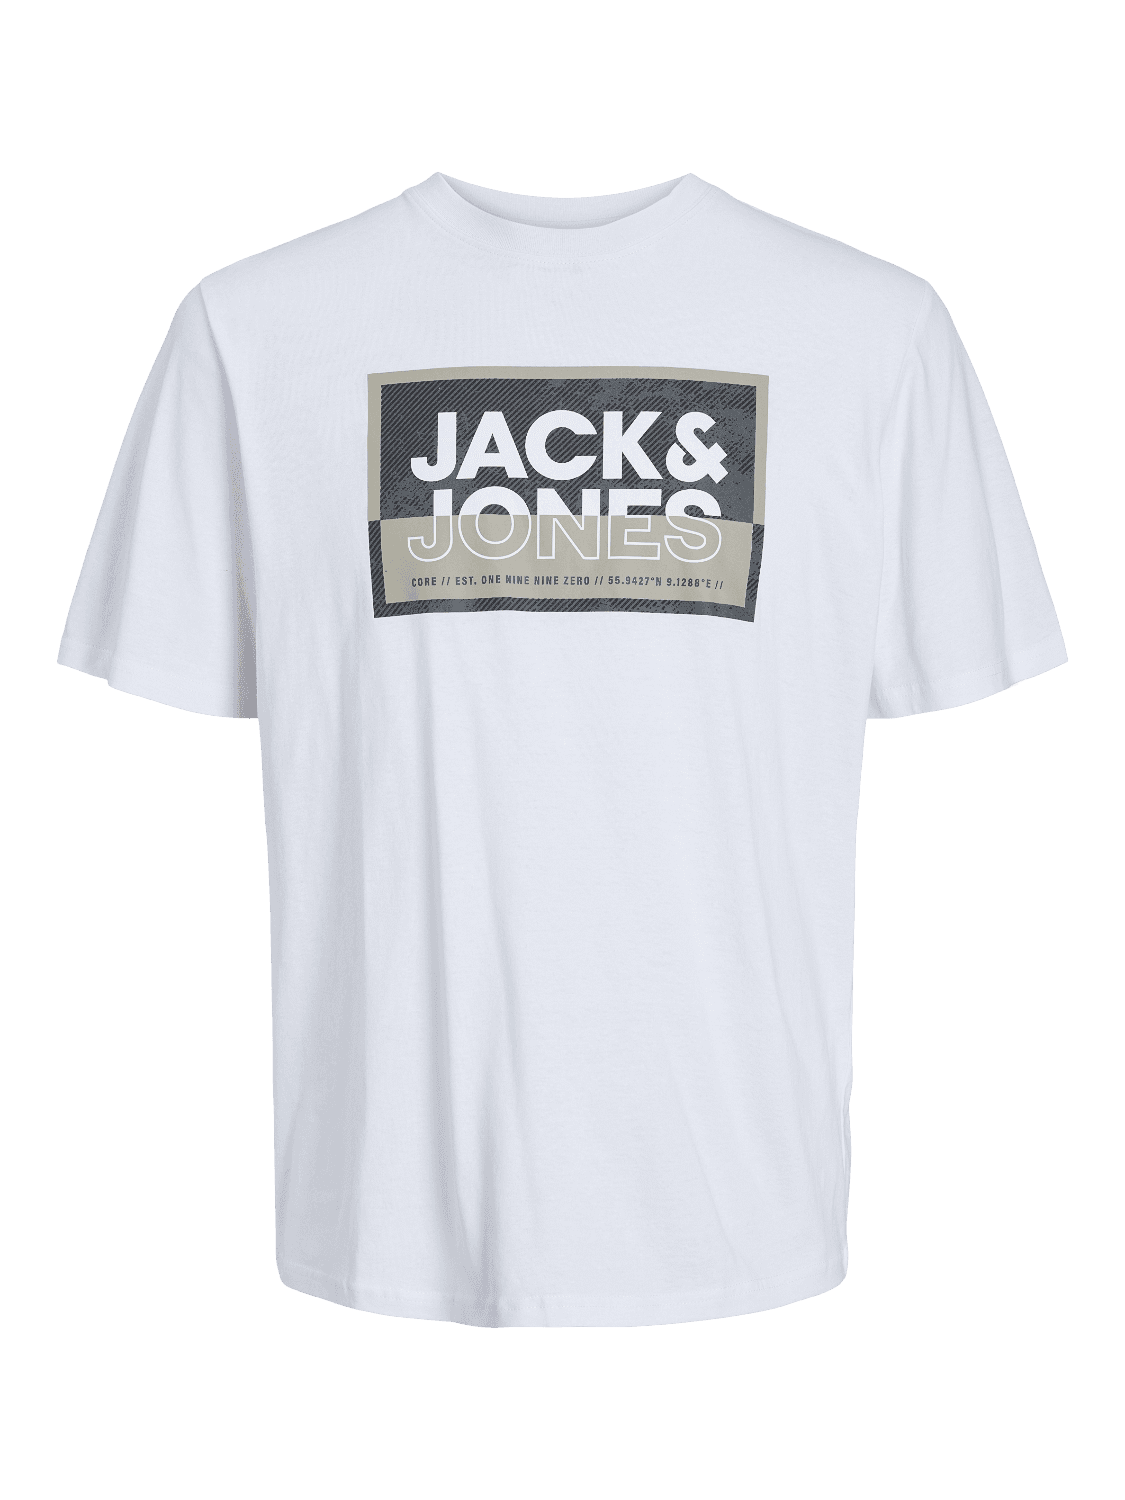 JACK & JONES Muška majica 12253442, Bela